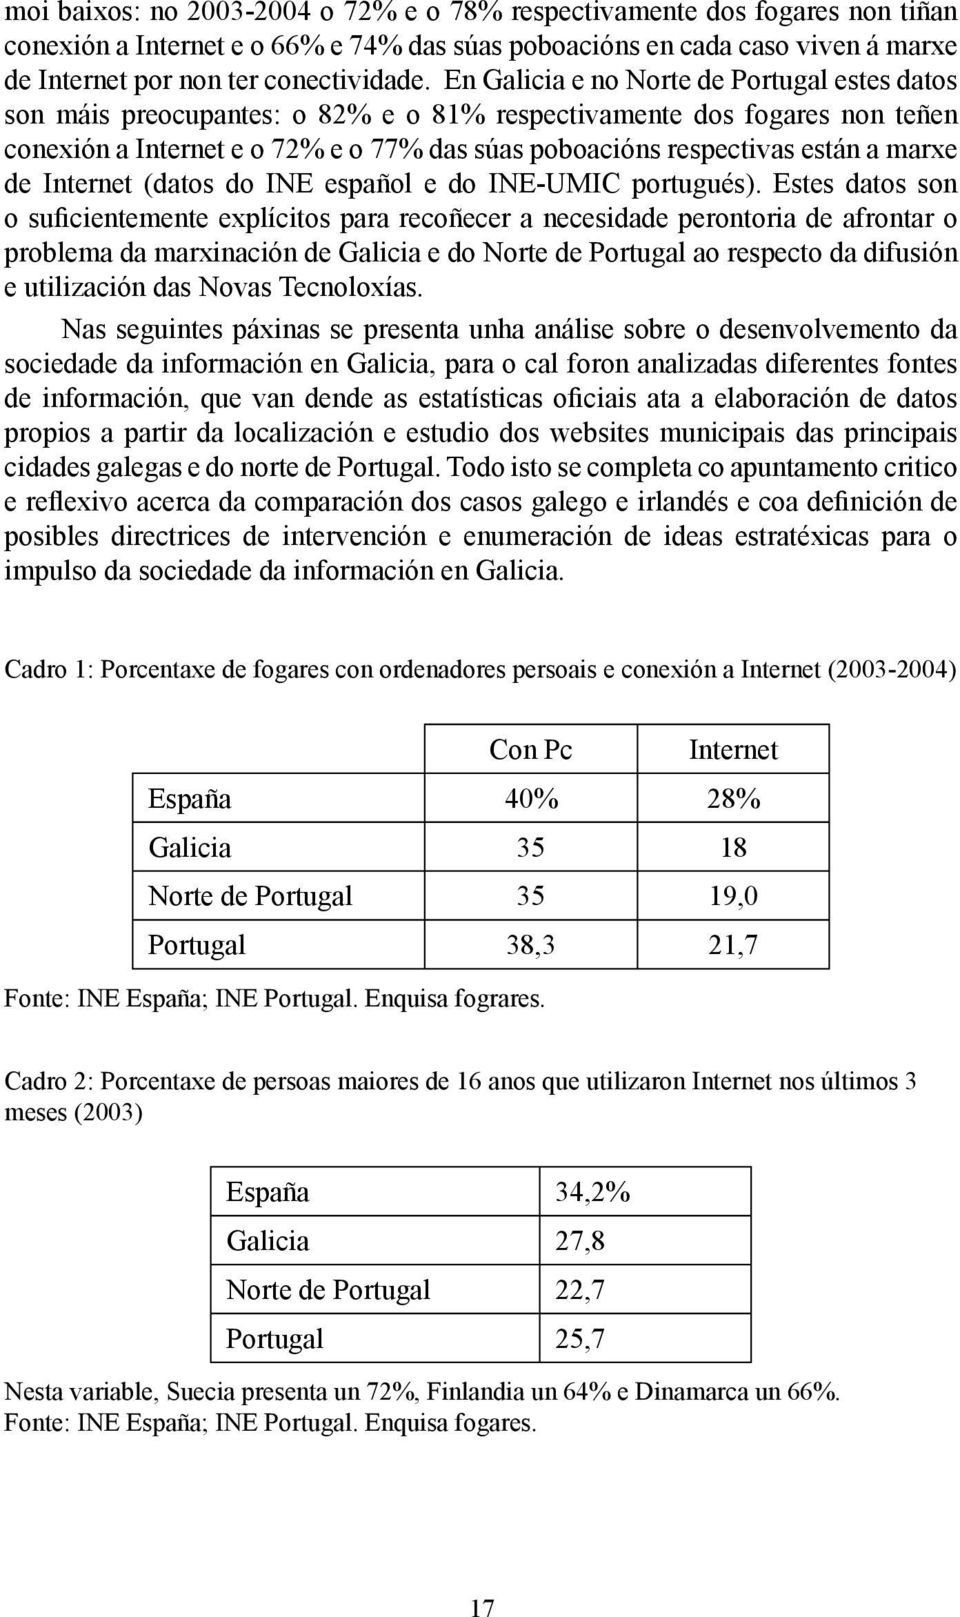 marxe de Internet (datos do INE español e do INE-UMIC portugués).